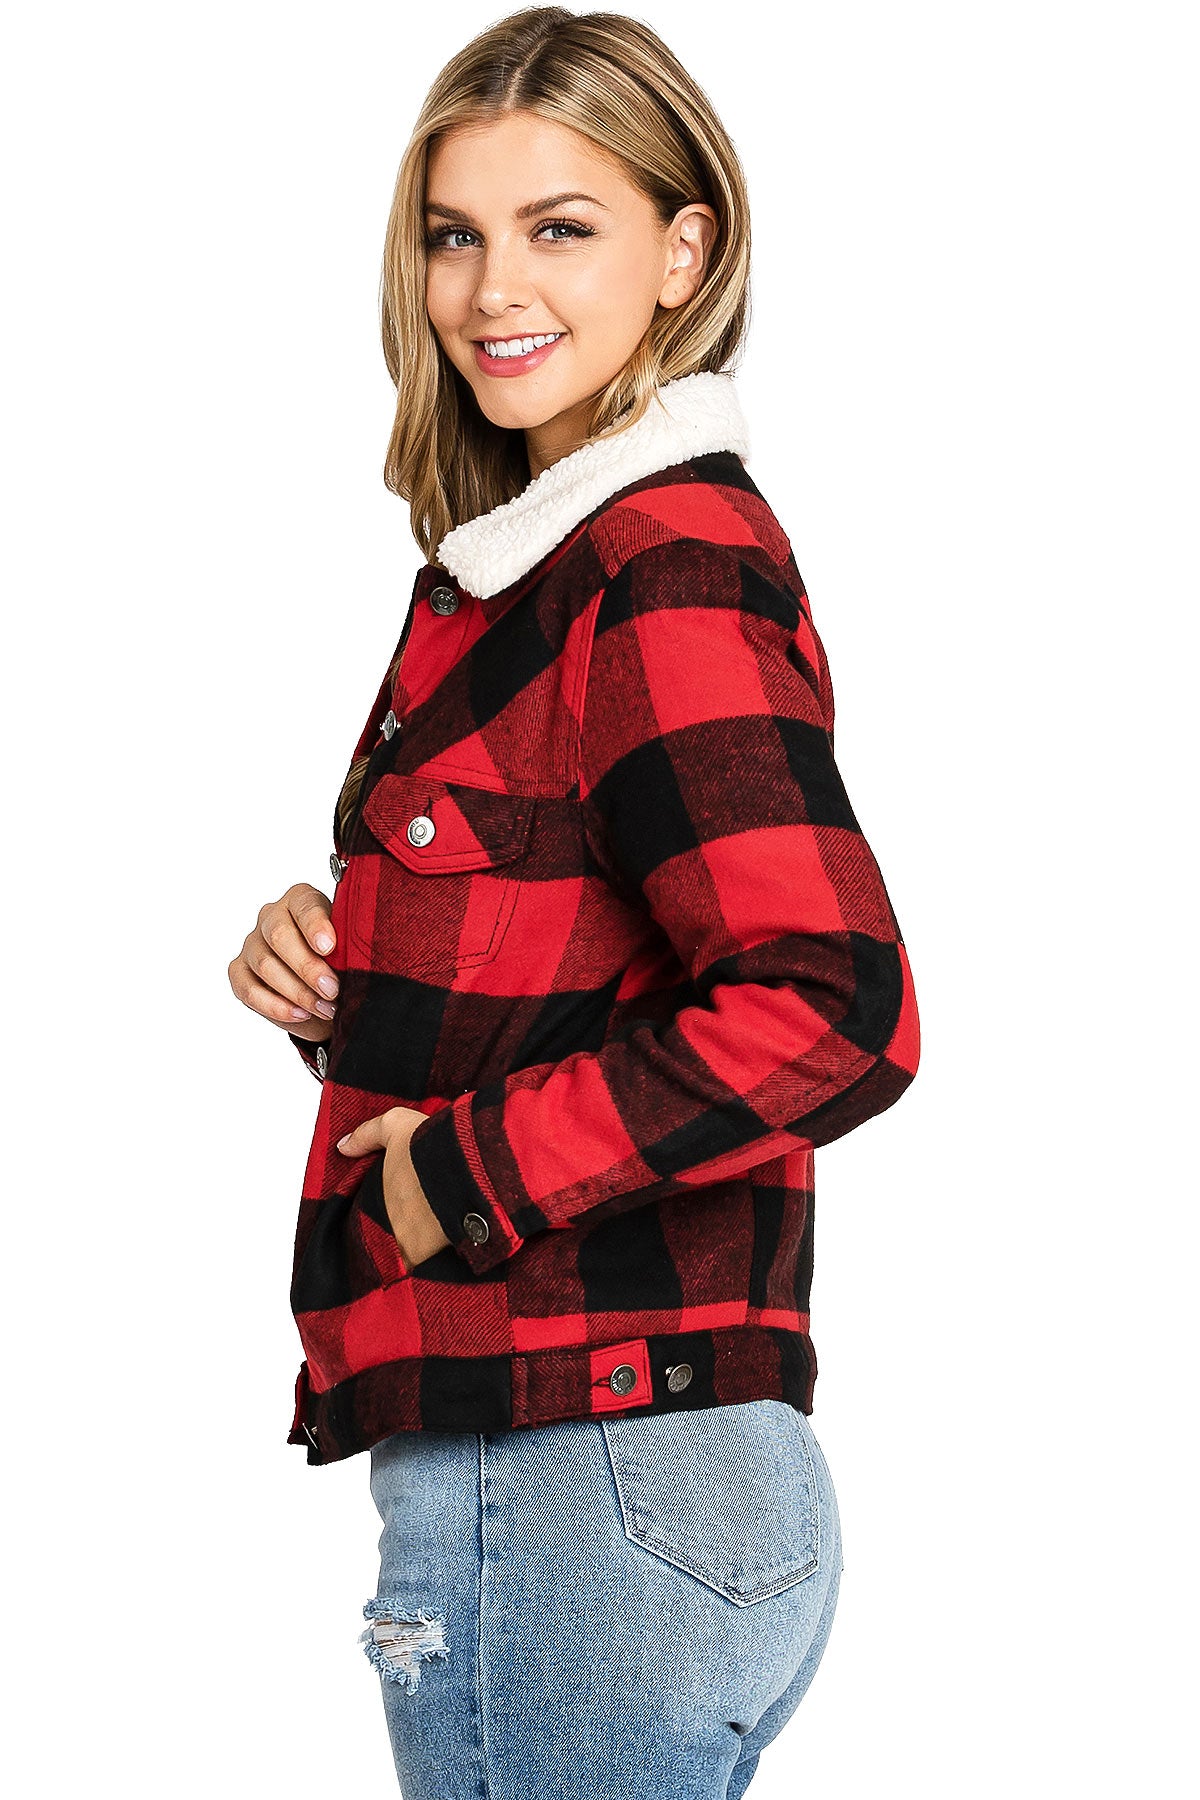 Lumber Plaid Jacket